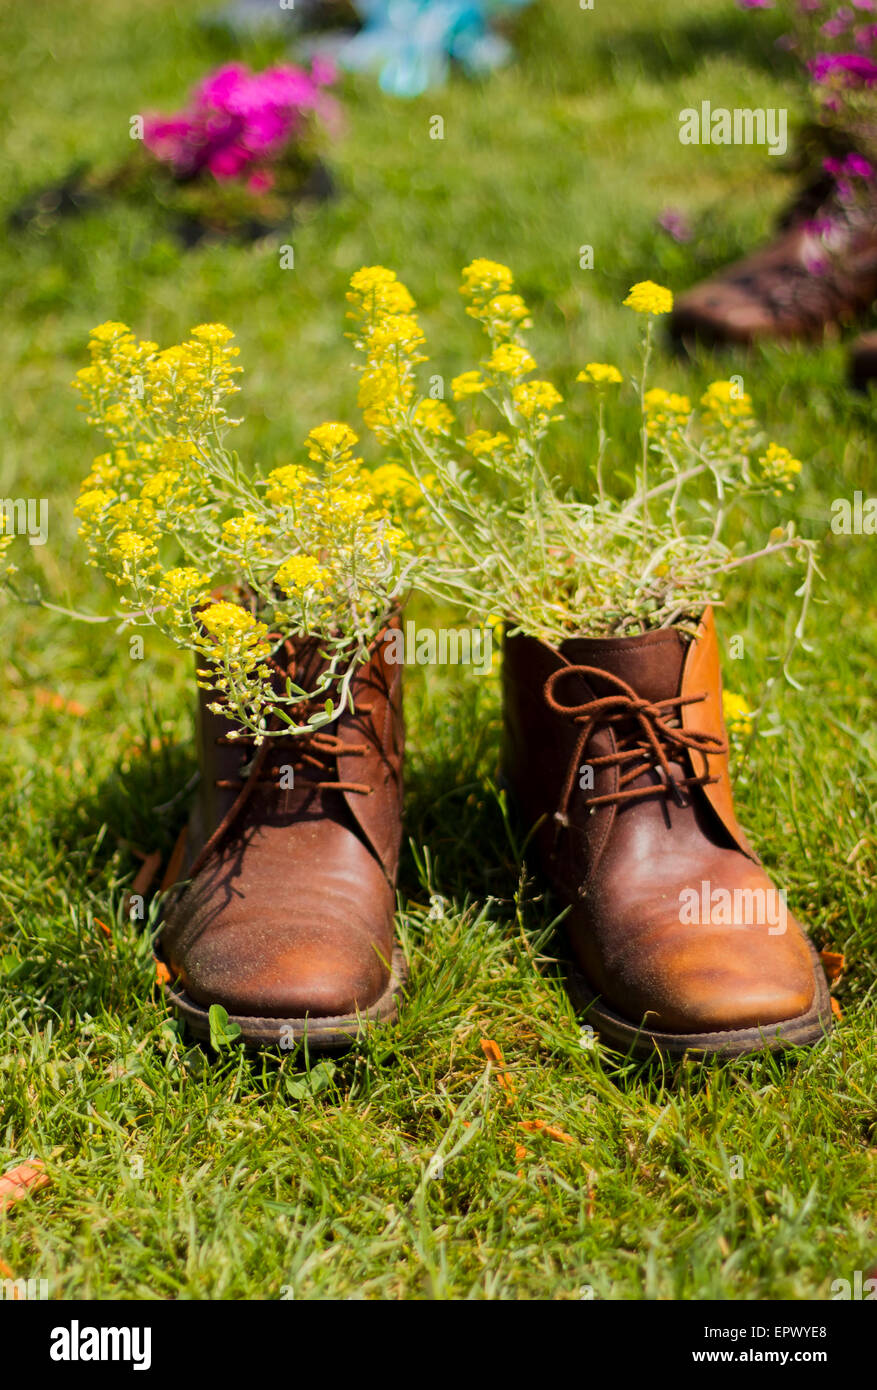 Lustige Schuhe mit gelben Blüten Stockfotografie - Alamy